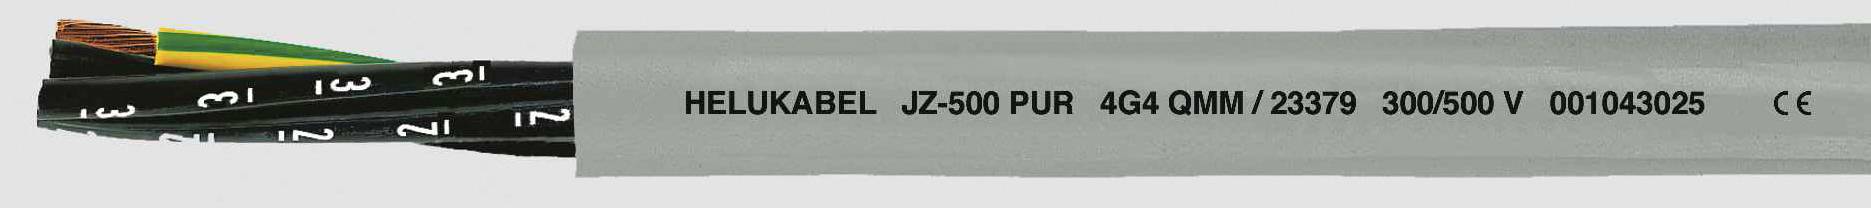 HELUKABEL JZ-500 PUR Steuerleitung 3 G 1 mm² Grau 23345-1000 1000 m